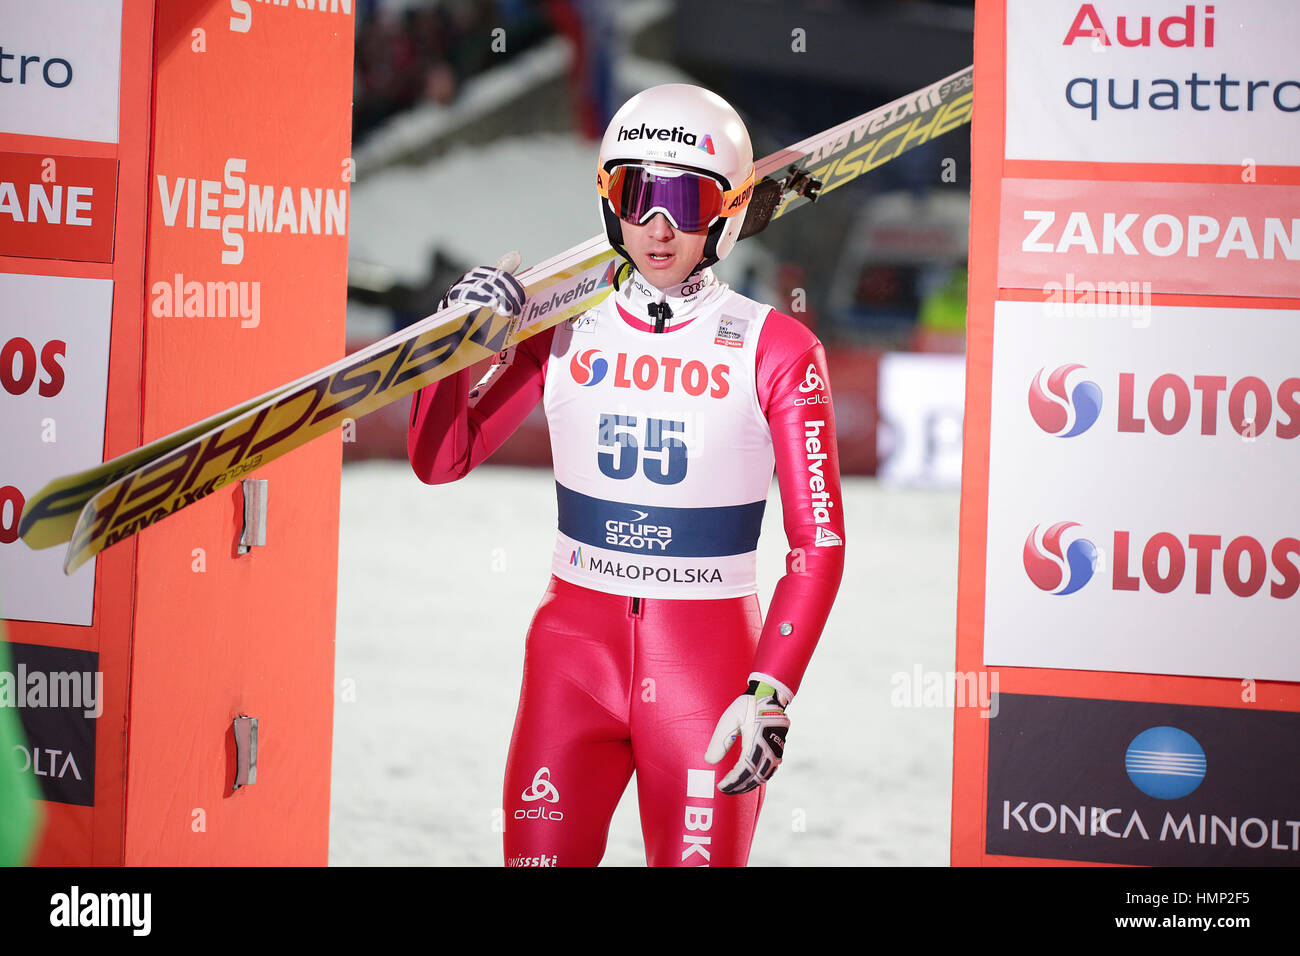 ZAKOPANE, POLAND - JANUARY 22, 2016: FIS Ski Jumping World Cup in Zakopane o/p Simon Amman SUI Stock Photo